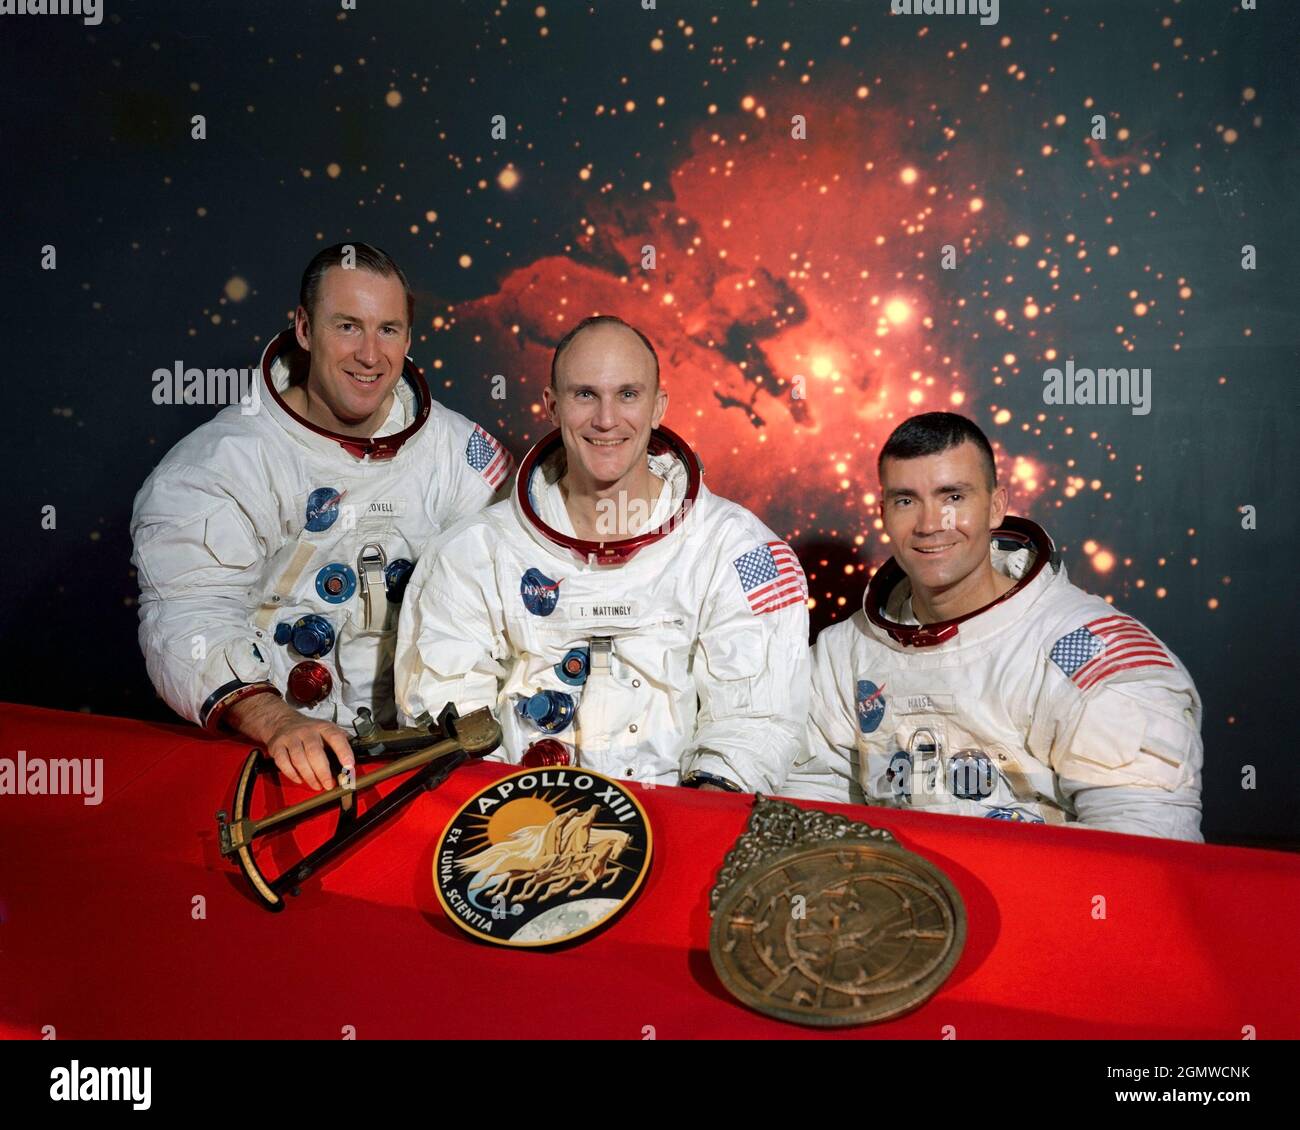 (Dezember 1969) --- die Mitglieder der Hauptmannschaft der Apollo 13 Mondlandemission (von links nach rechts) sind die Astronauten James A. Lovell Jr., Kommandant; Thomas K. Mattingly II, Kommandomodulpilot; und Fred W. Haise Jr., Mondmodulpilot. Sie sitzen vor einer Szene des Lagunennebels, mit den Missionsinsignien und zwei Objekten der frühen Navigation im Vordergrund. Im Apollo 13 Emblem (Mitte) ist Apollo, der sonnengott der griechischen Mythologie, dargestellt, der symbolisiert, dass die Apollo-Flüge das Licht des Wissens auf die ganze Menschheit erweitert haben. Der lateinische Satz Ex Luna, Scientia bedeutet 'fro Stockfoto